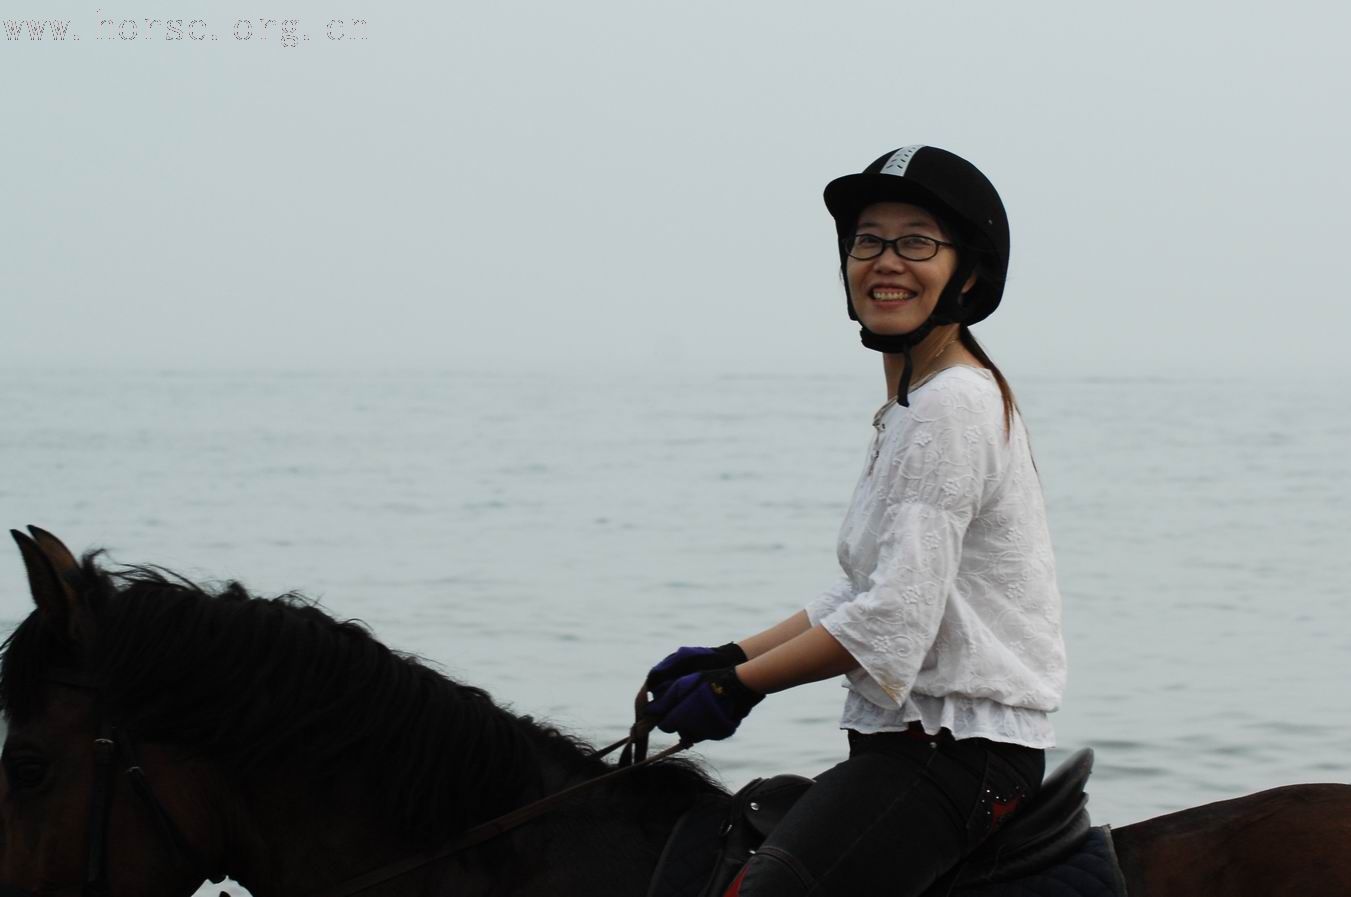 青岛凤凰山庄、德瑞马术俱乐部组织海边骑马图片